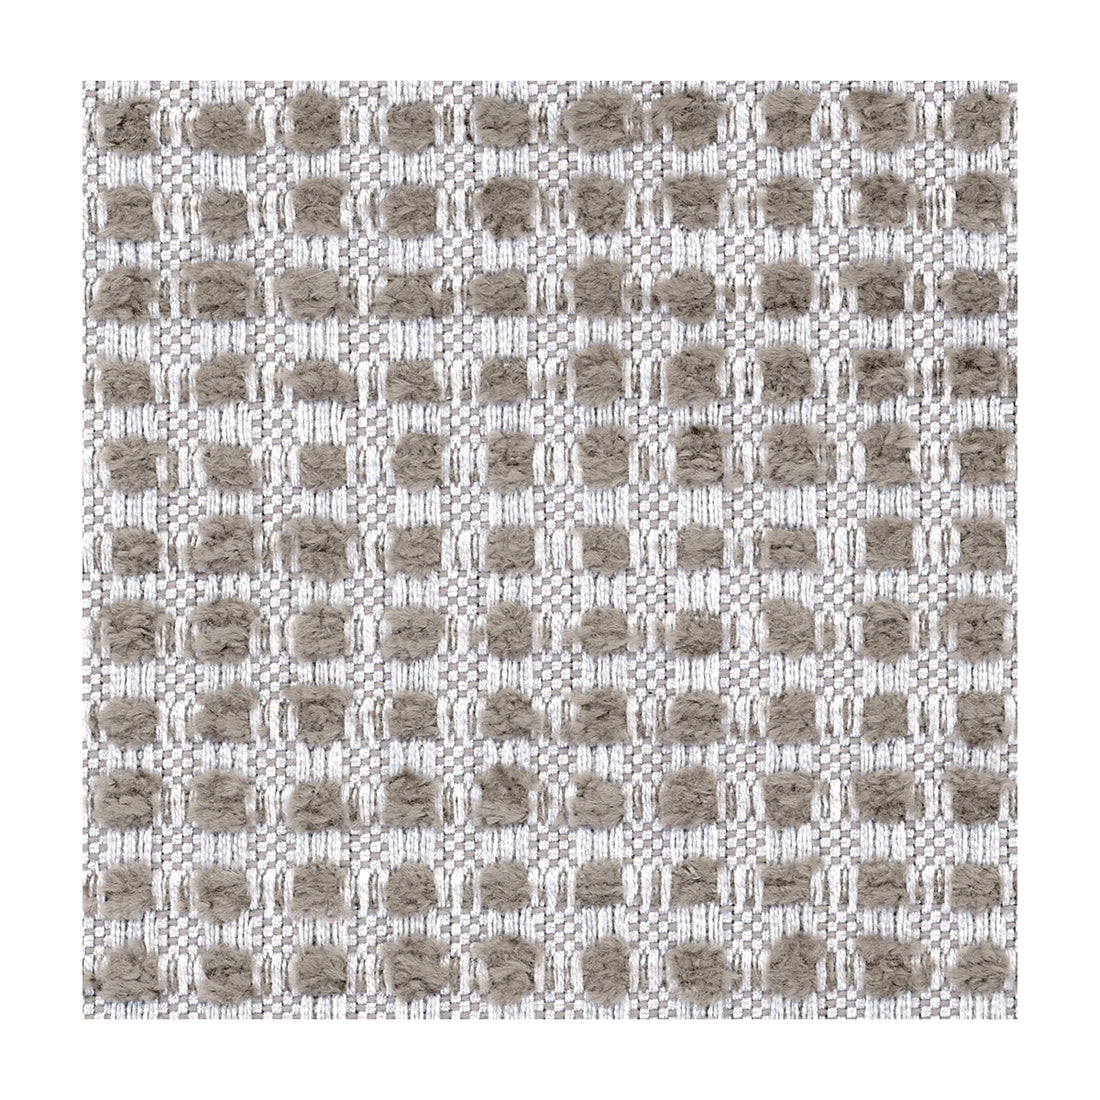 Kravet Design fabric in 31028-1621 color - pattern 31028.1621.0 - by Kravet Design